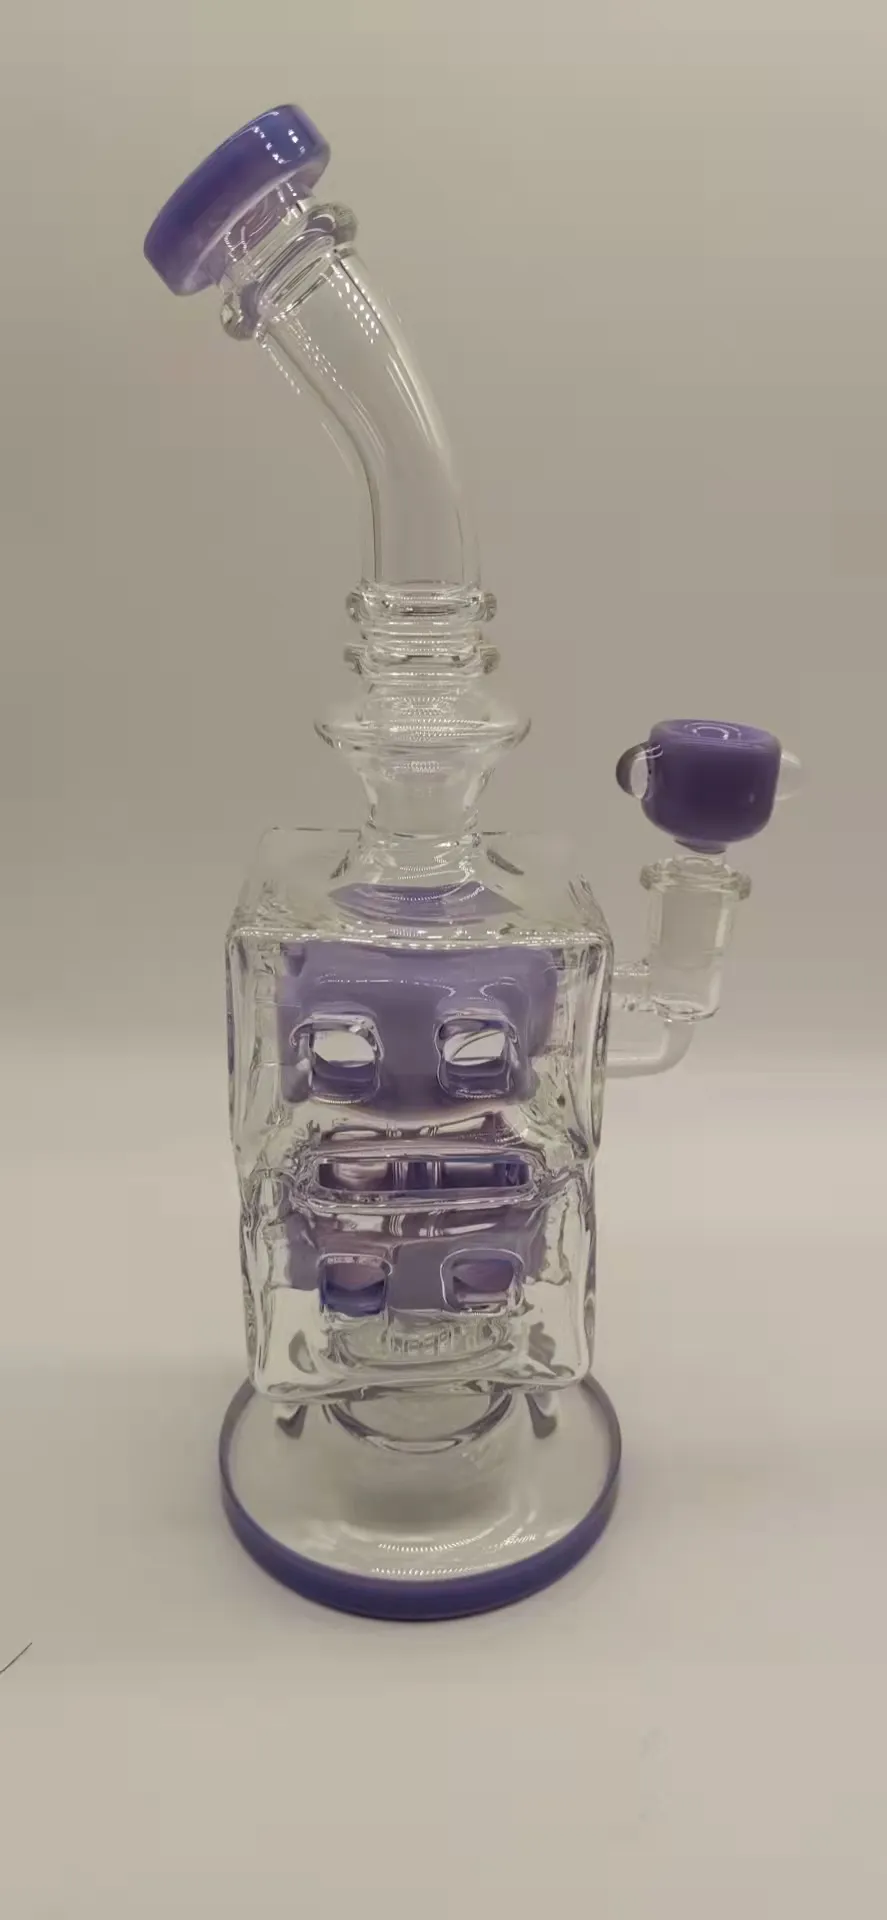 フッハスホウケイ酸ガラスミルクパープルグラスフックホイルリグバブラー。ユニークなデザイン